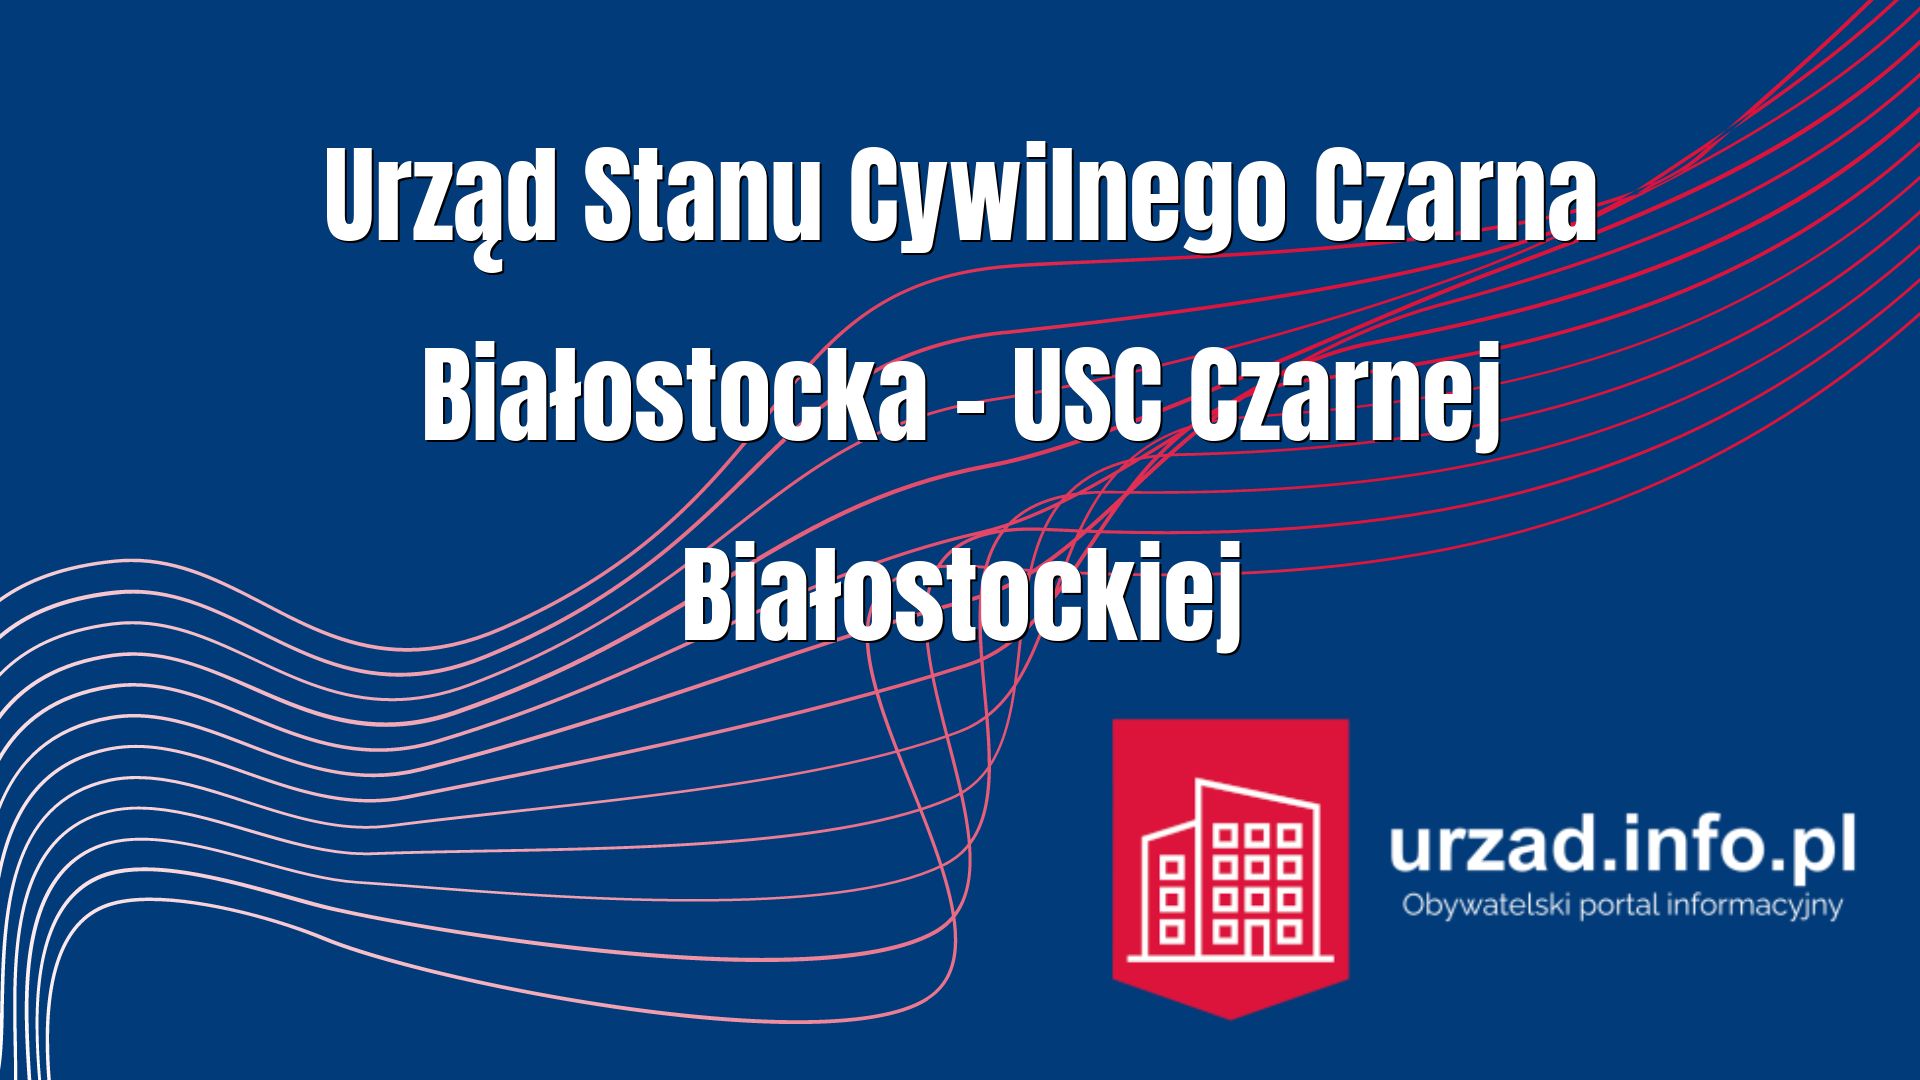 Urząd Stanu Cywilnego Czarna Białostocka – USC Czarnej Białostockiej